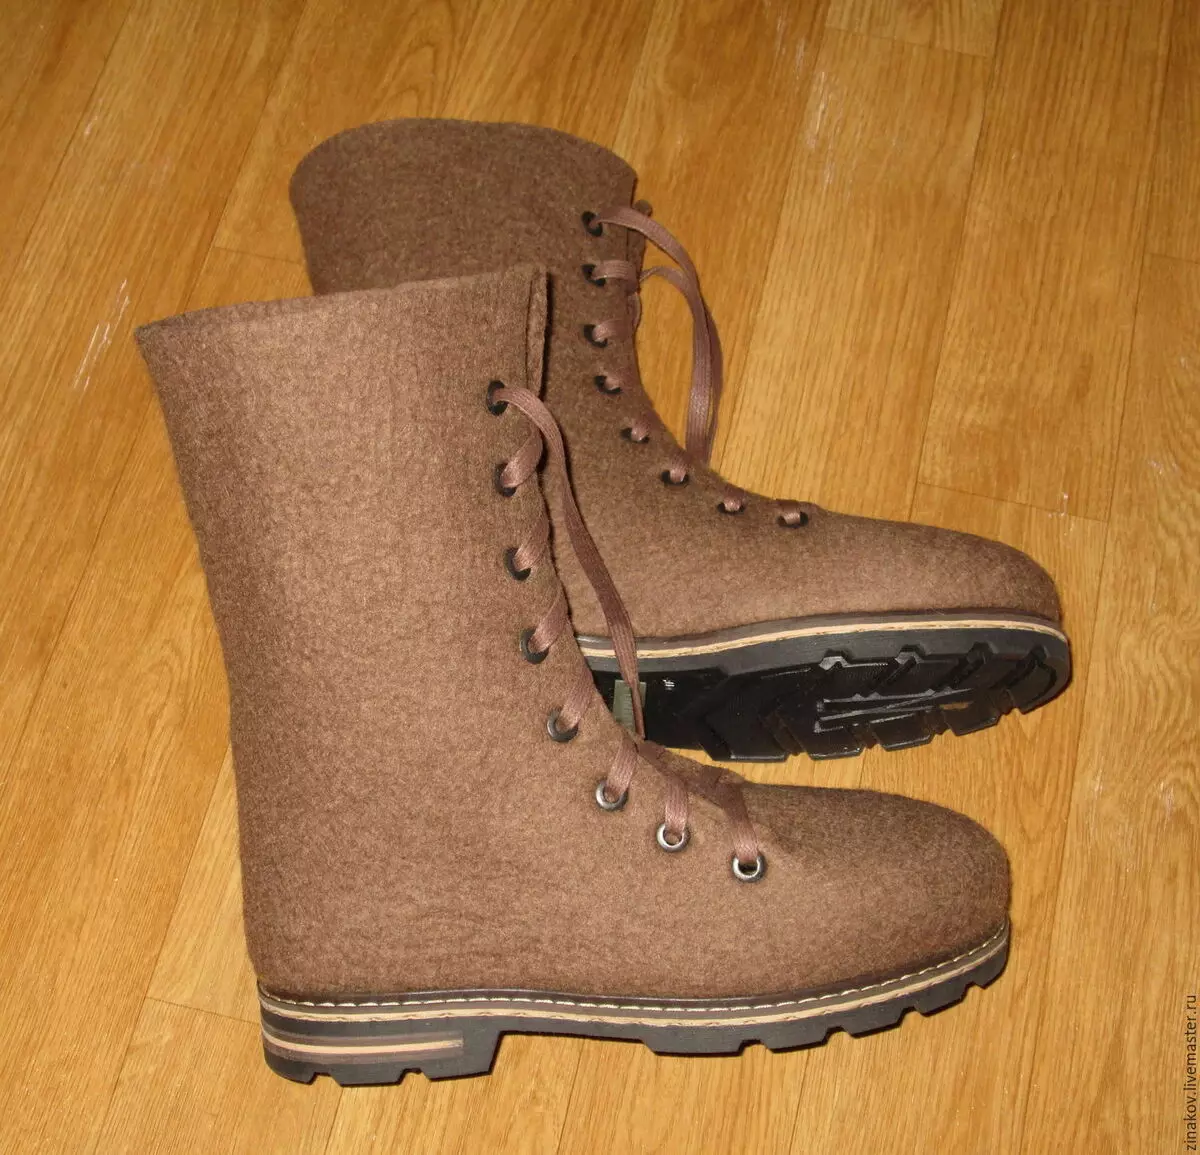 Felt Boots (27 รูป): รุ่นสตรีแฟชั่นจาก Felt บน Sole ของ บริษัท Zimushka 1861_20